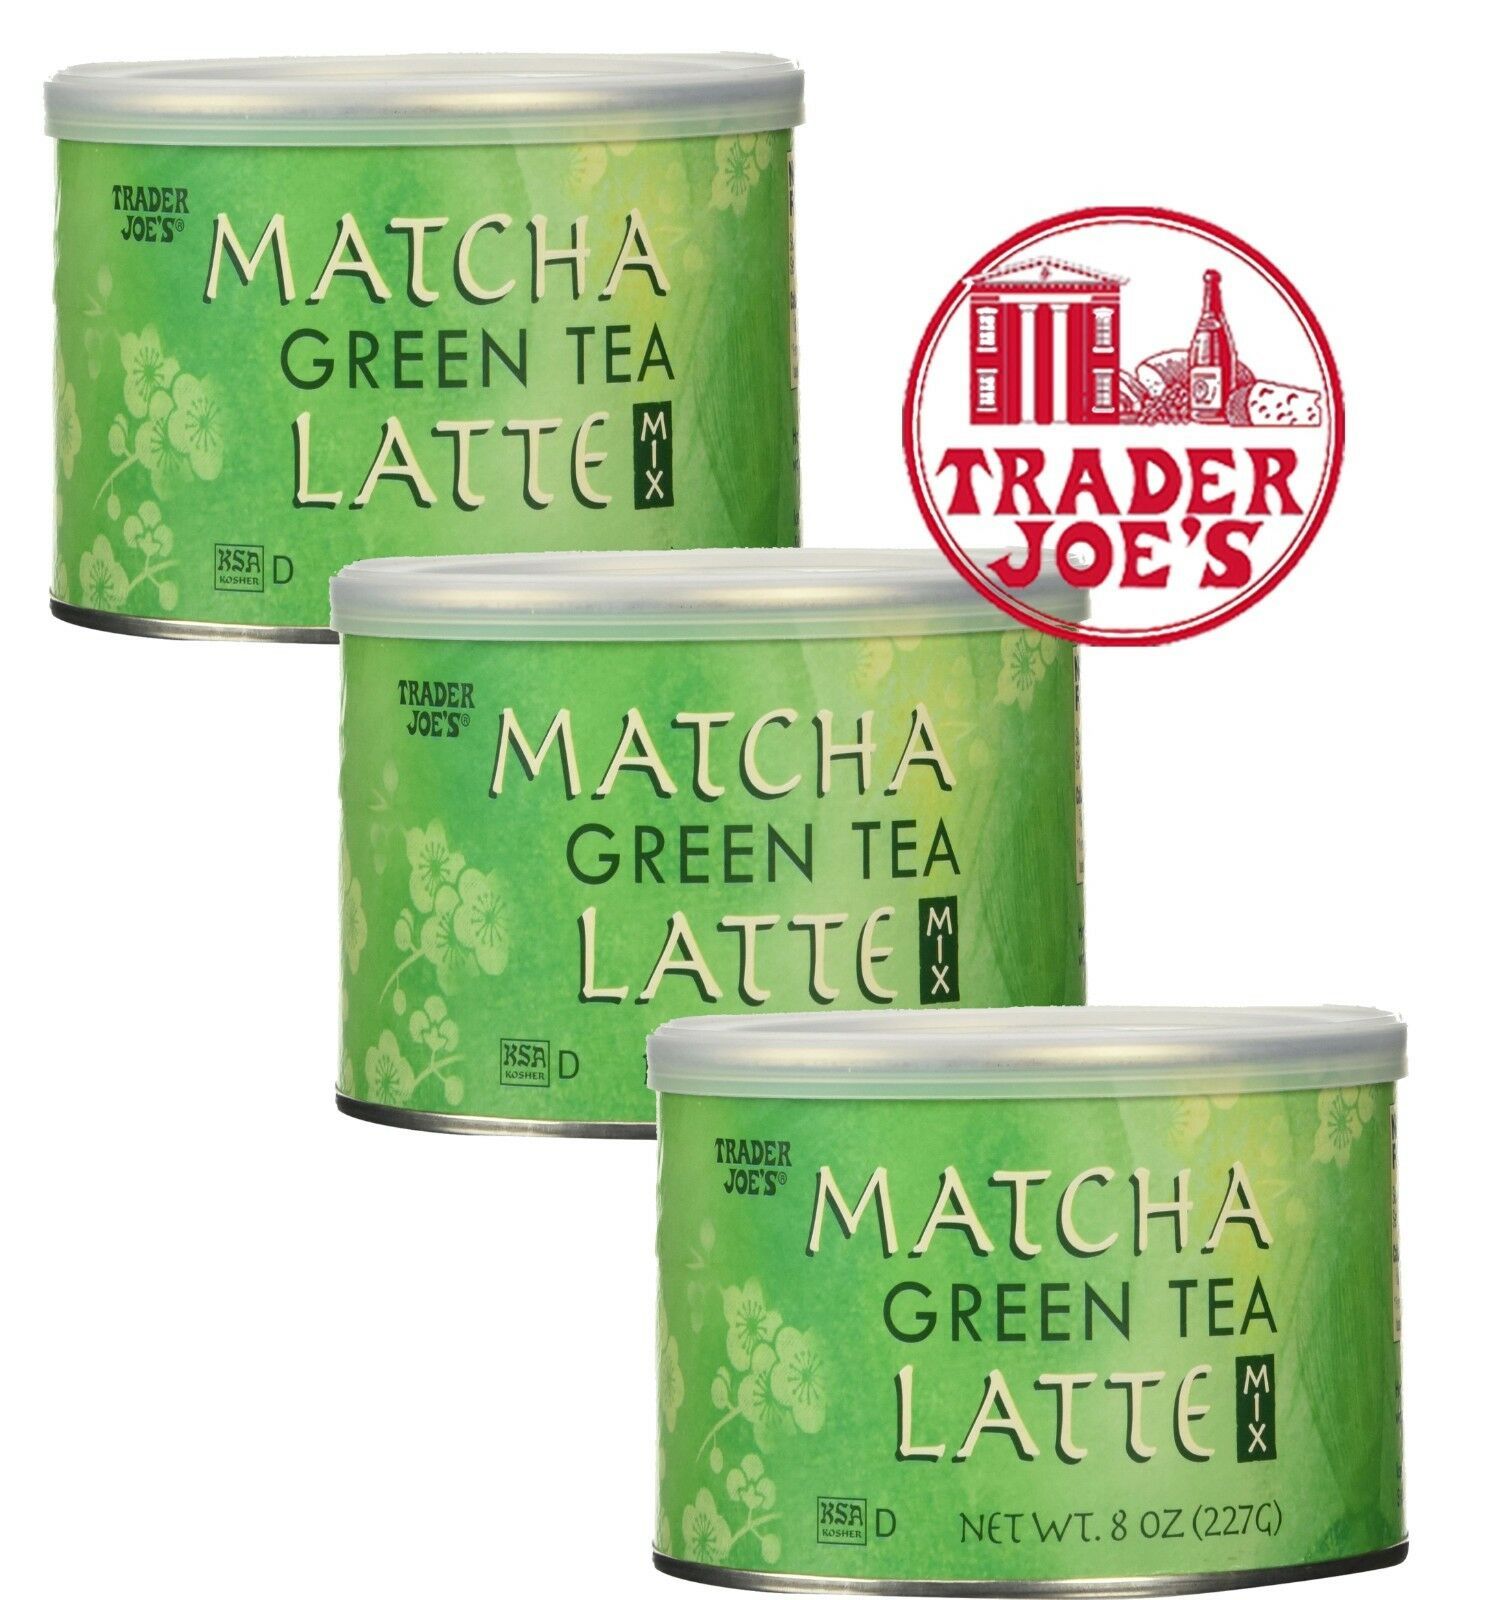 Lipton Thé Vert Matcha 20 Sachets - 30 g